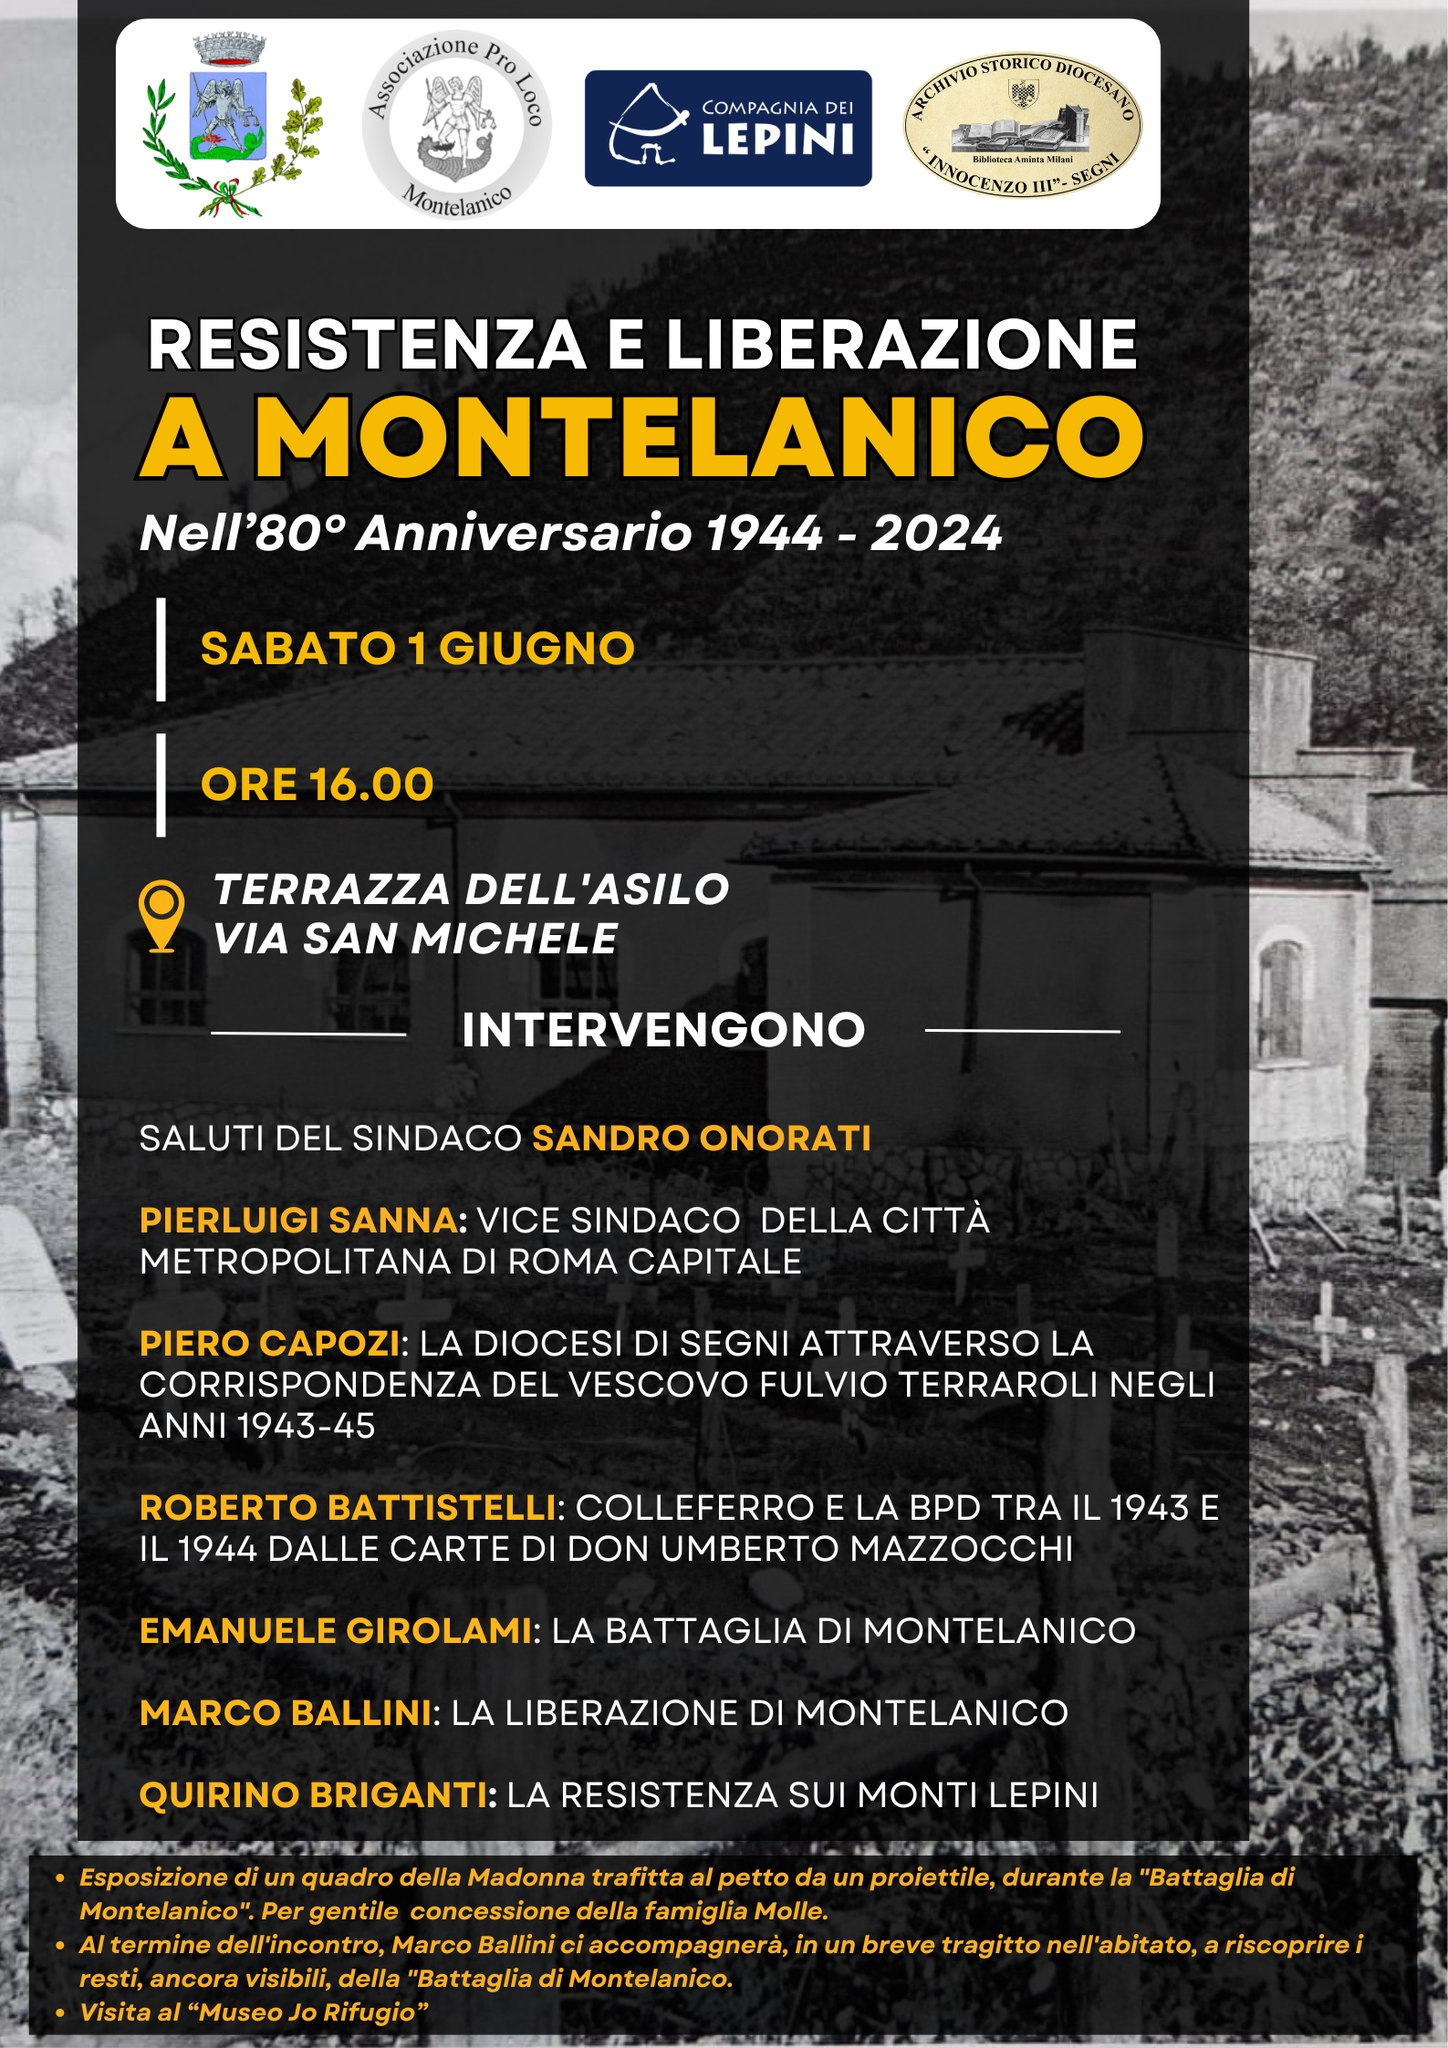 Montelanico: 80° Anniversario di Resistenza e Liberazione @ Comune di Montelanico (RM)